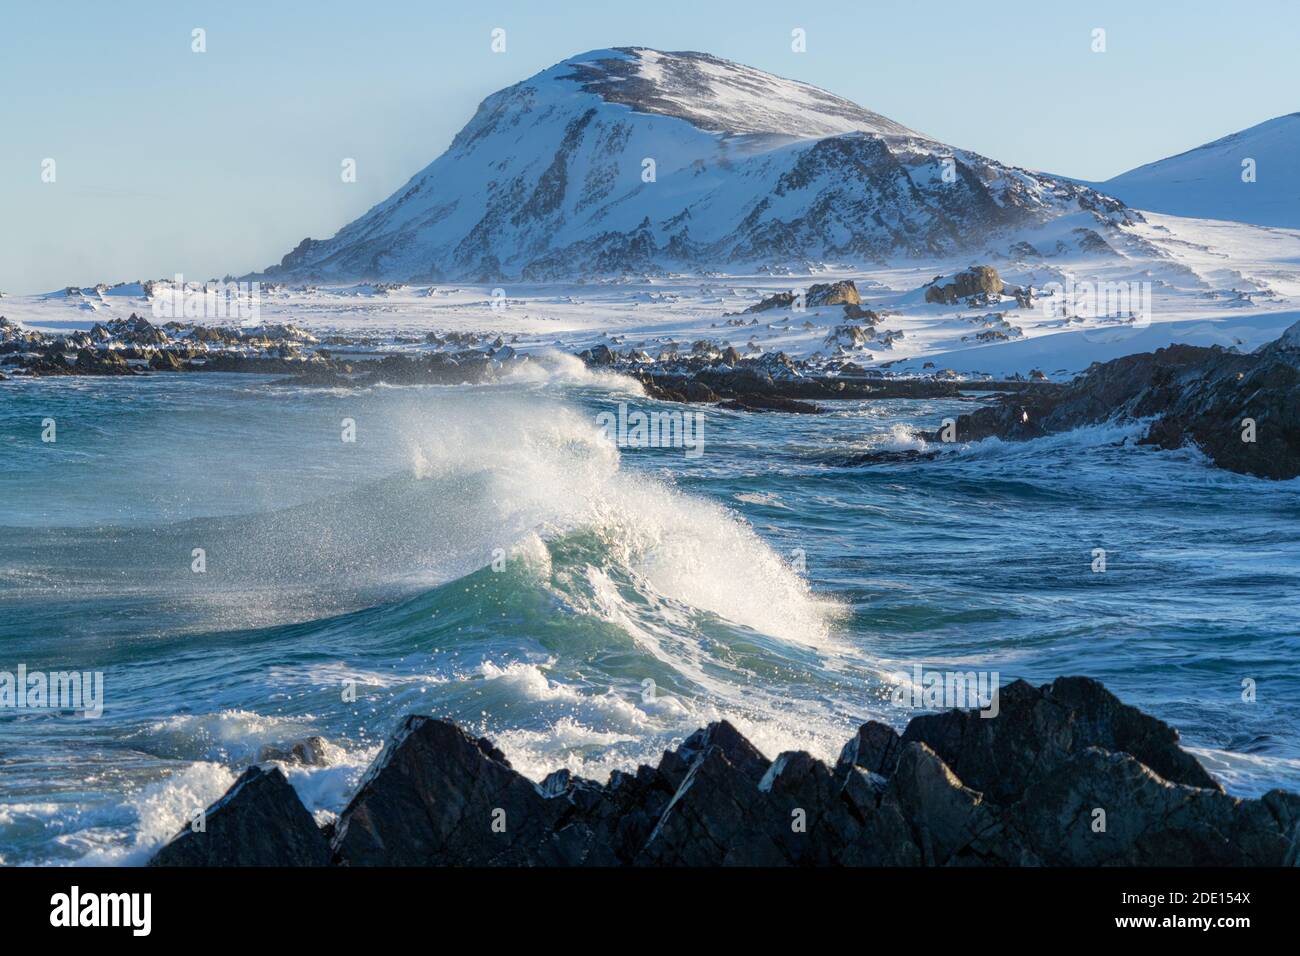 Olas de frío Mar de Barents levantándose antes de romper en las rocas, Sandfjorden, Océano Ártico, Península de Varanger, Finnmark, Noruega, Escandinavia, Europa Foto de stock